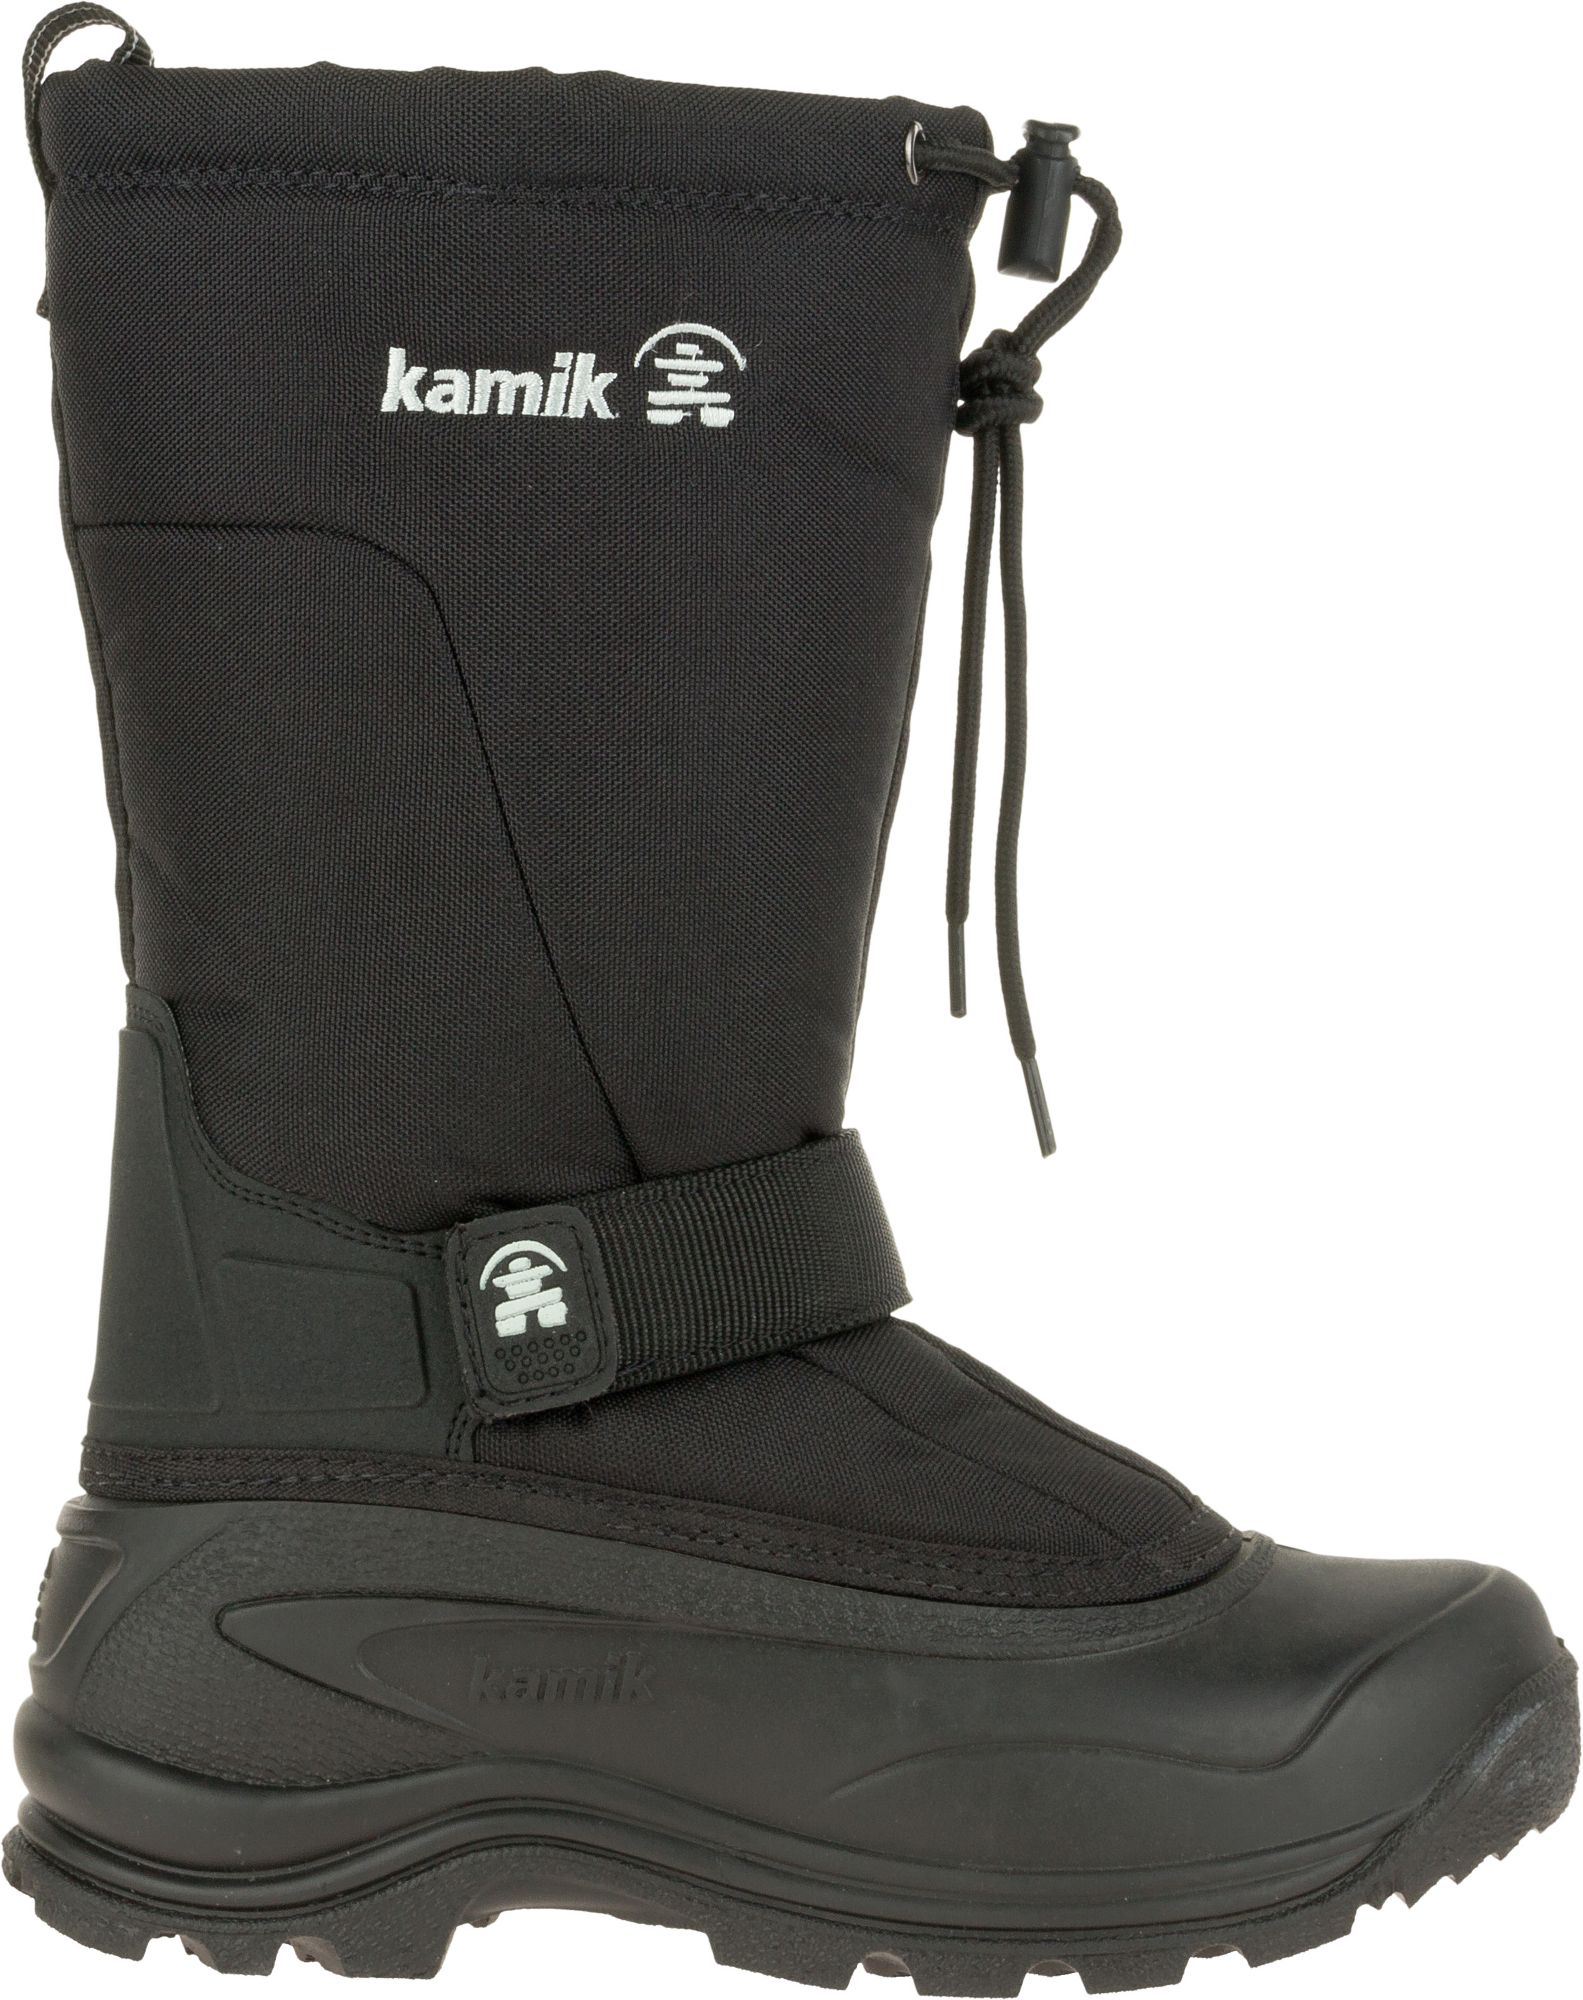 kamik canuck women's winter boots